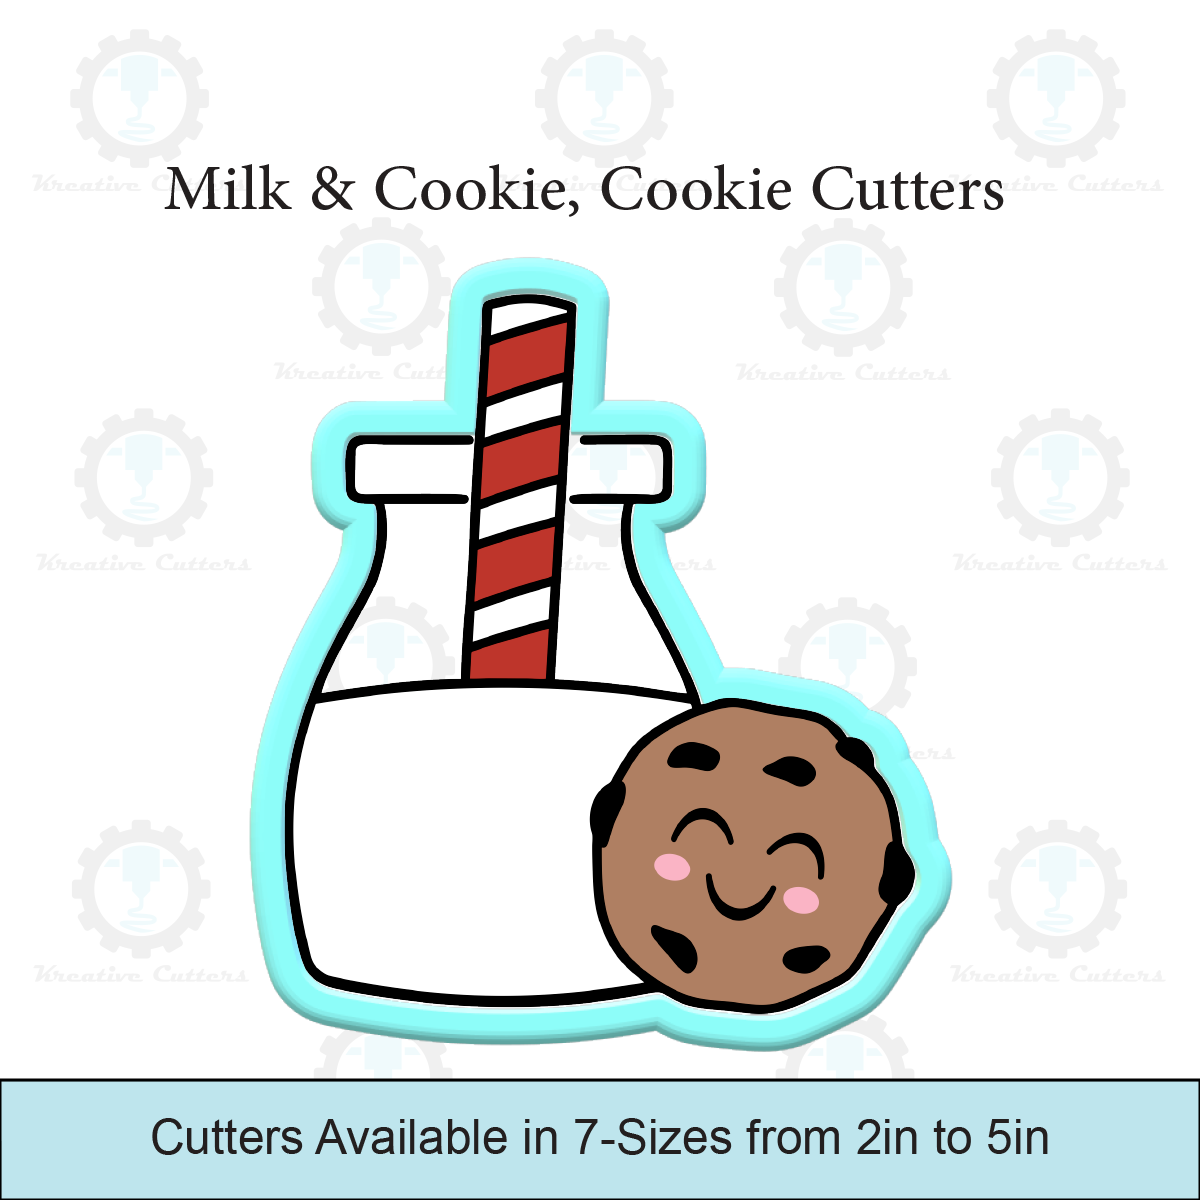 Milk & Cookie, Cookie Cutters